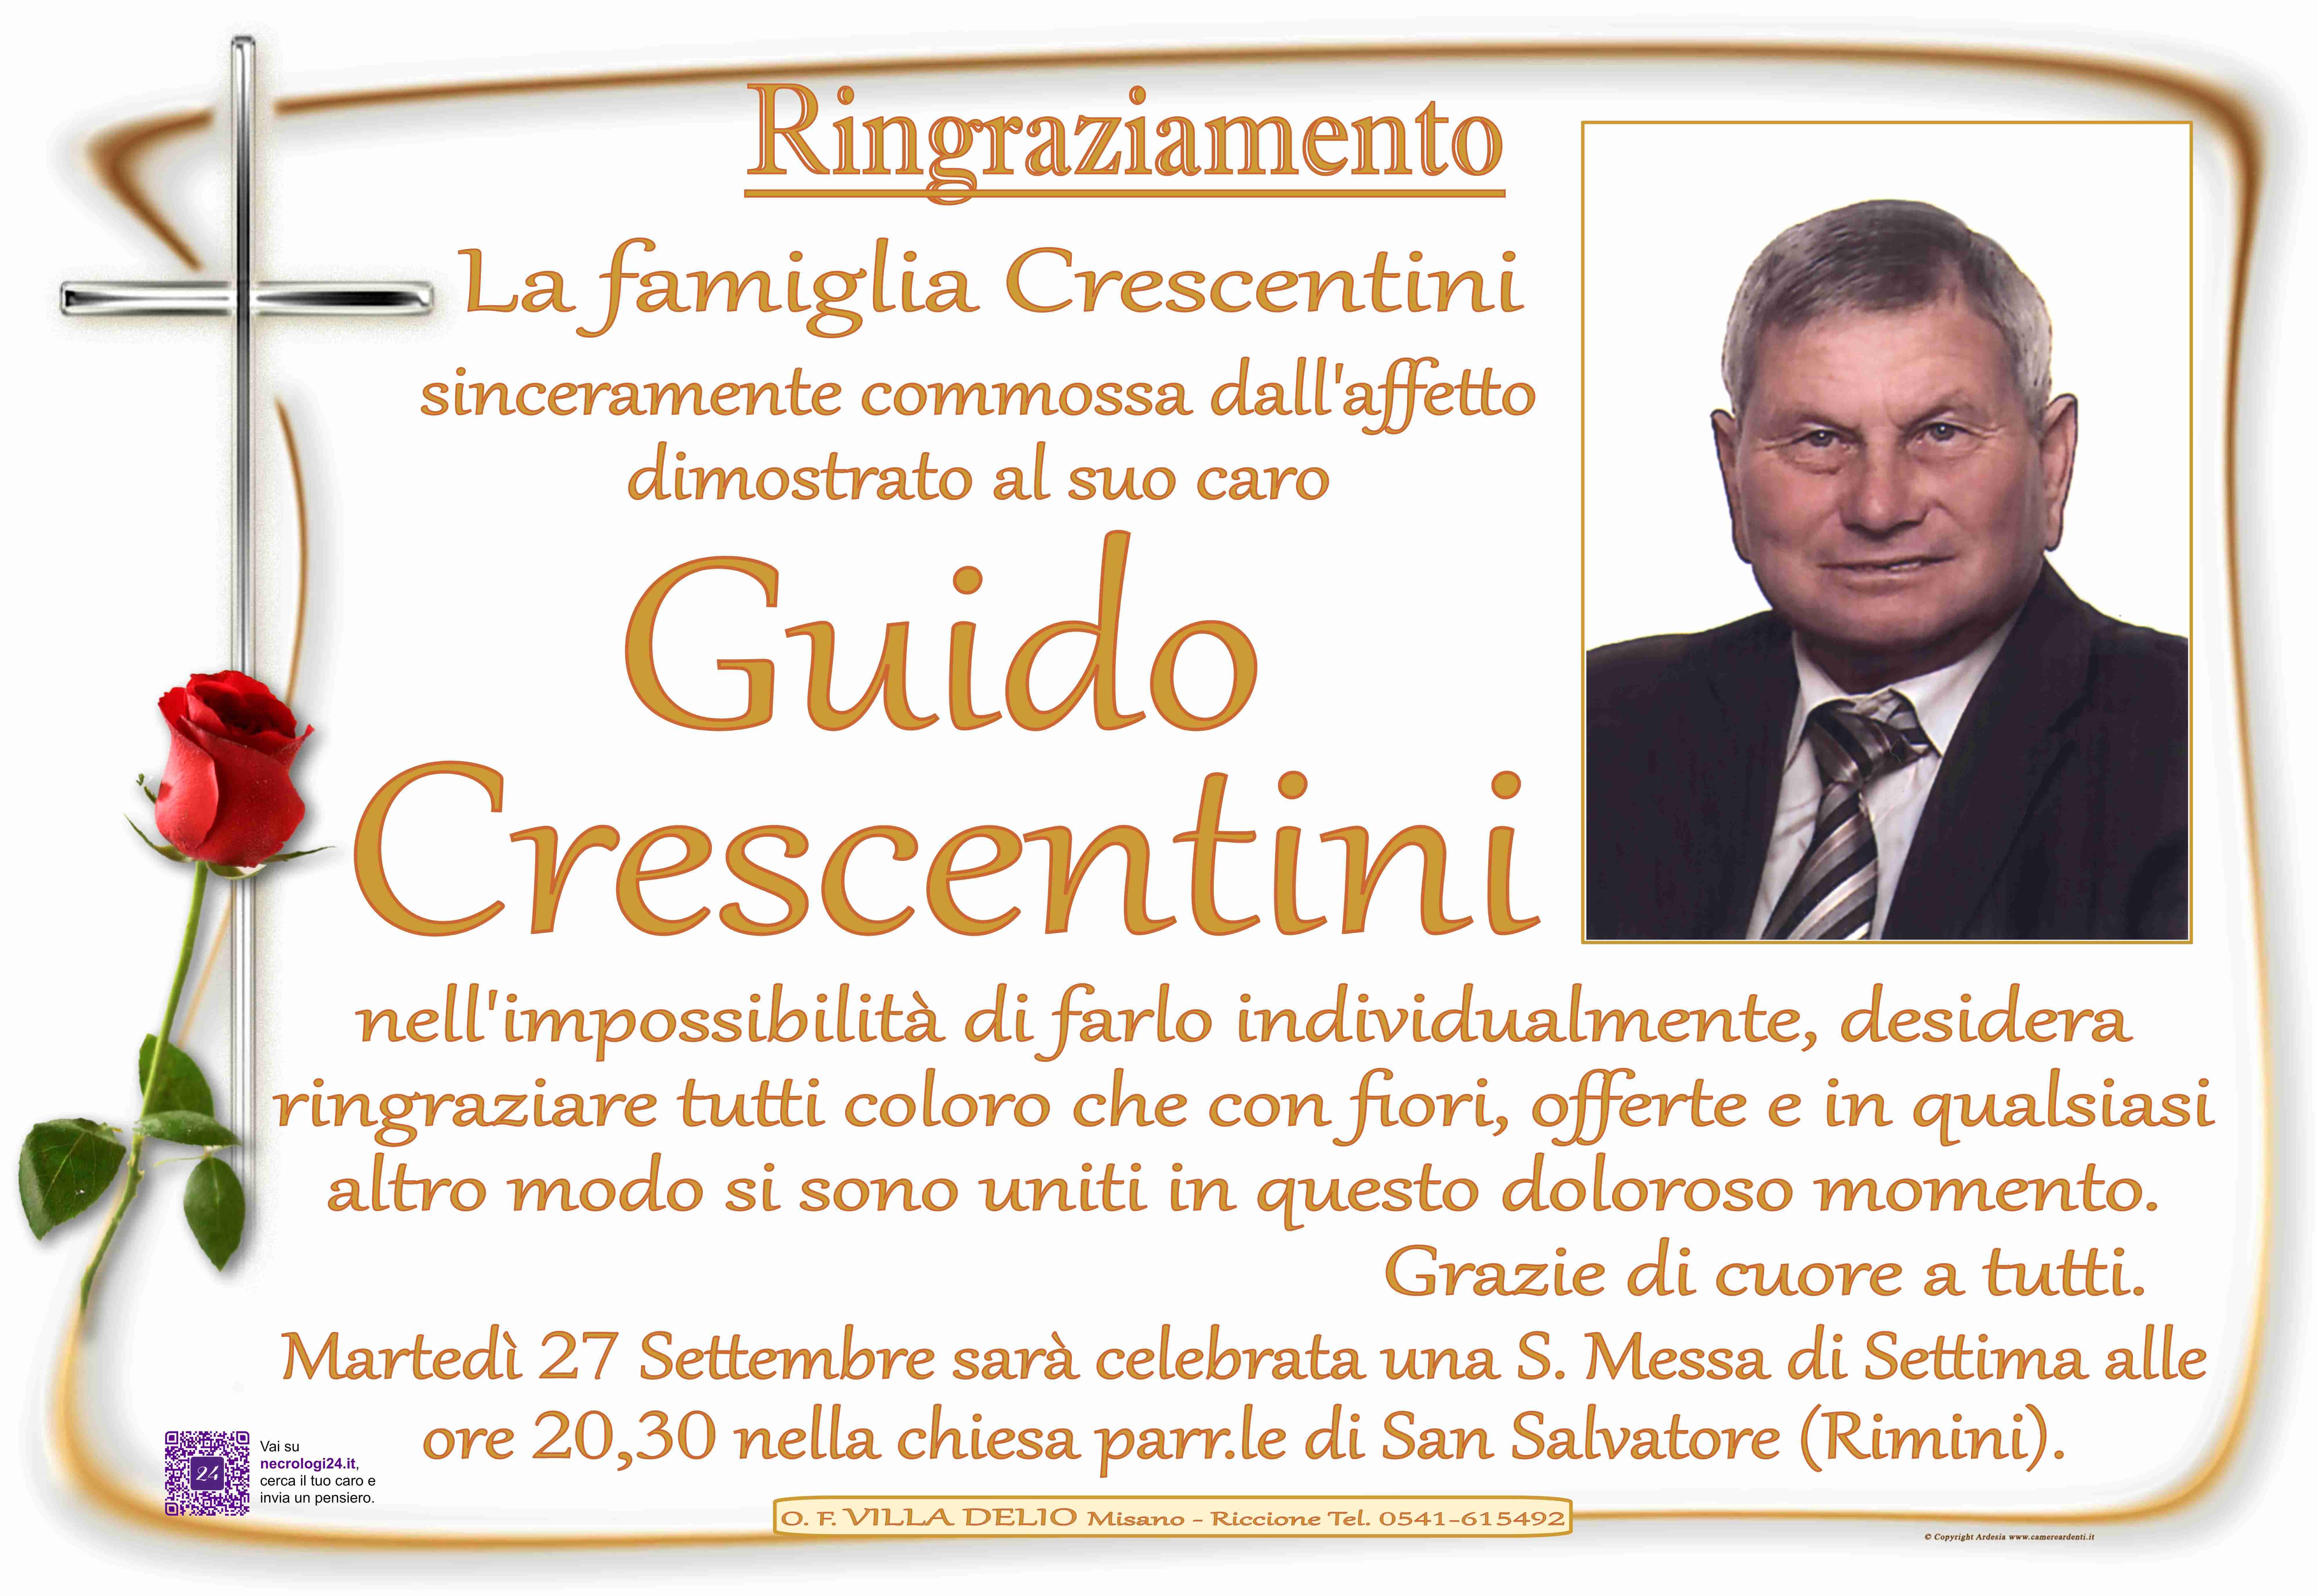 Guido Crescentini